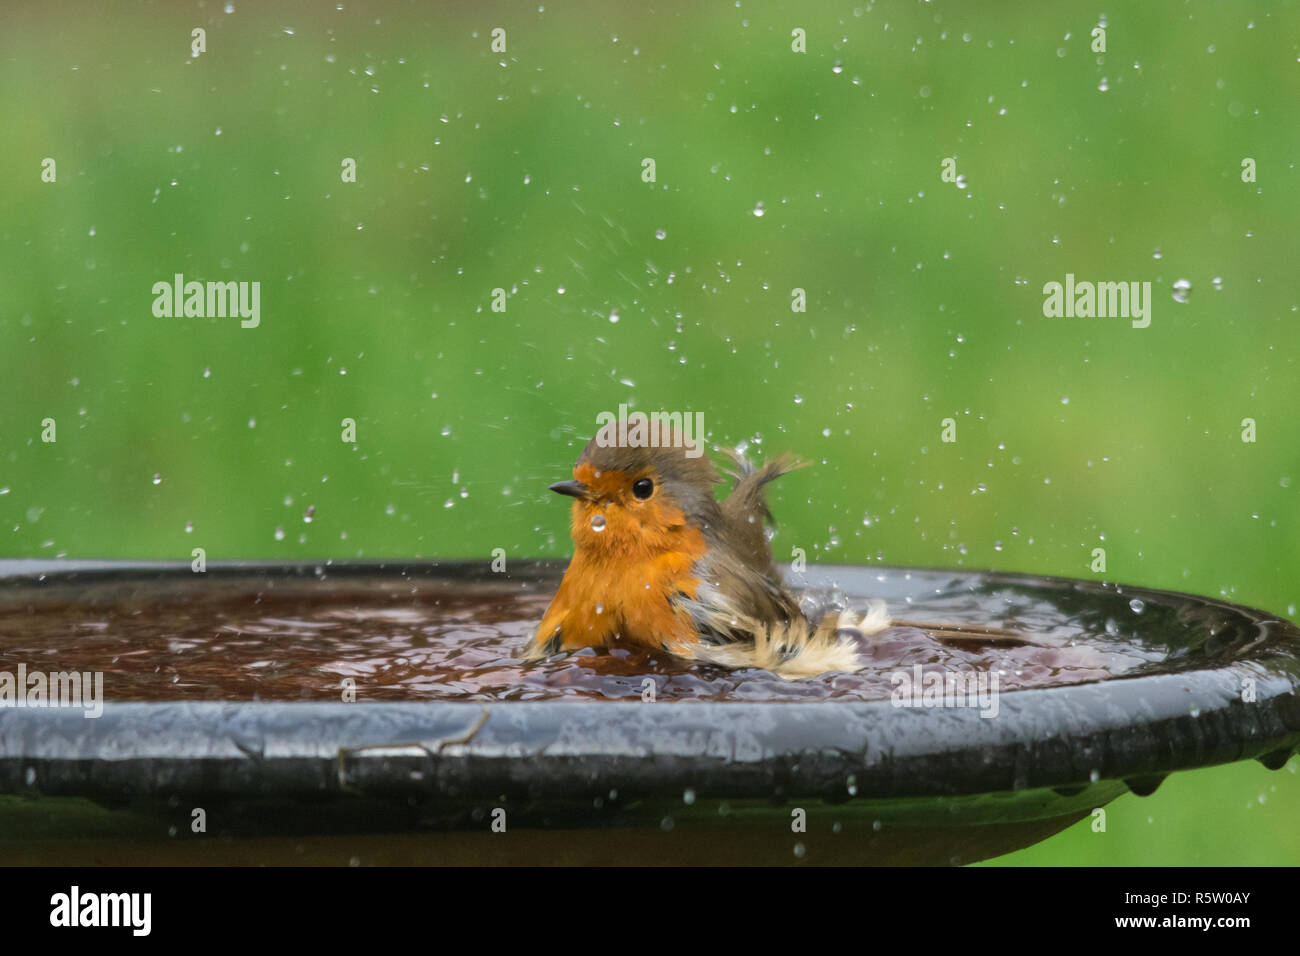 Robin (Erithacus Rubecula), kleiner Vogel in einer Badewanne, Garten Tiere, tierische Humor, Humor Stockfoto